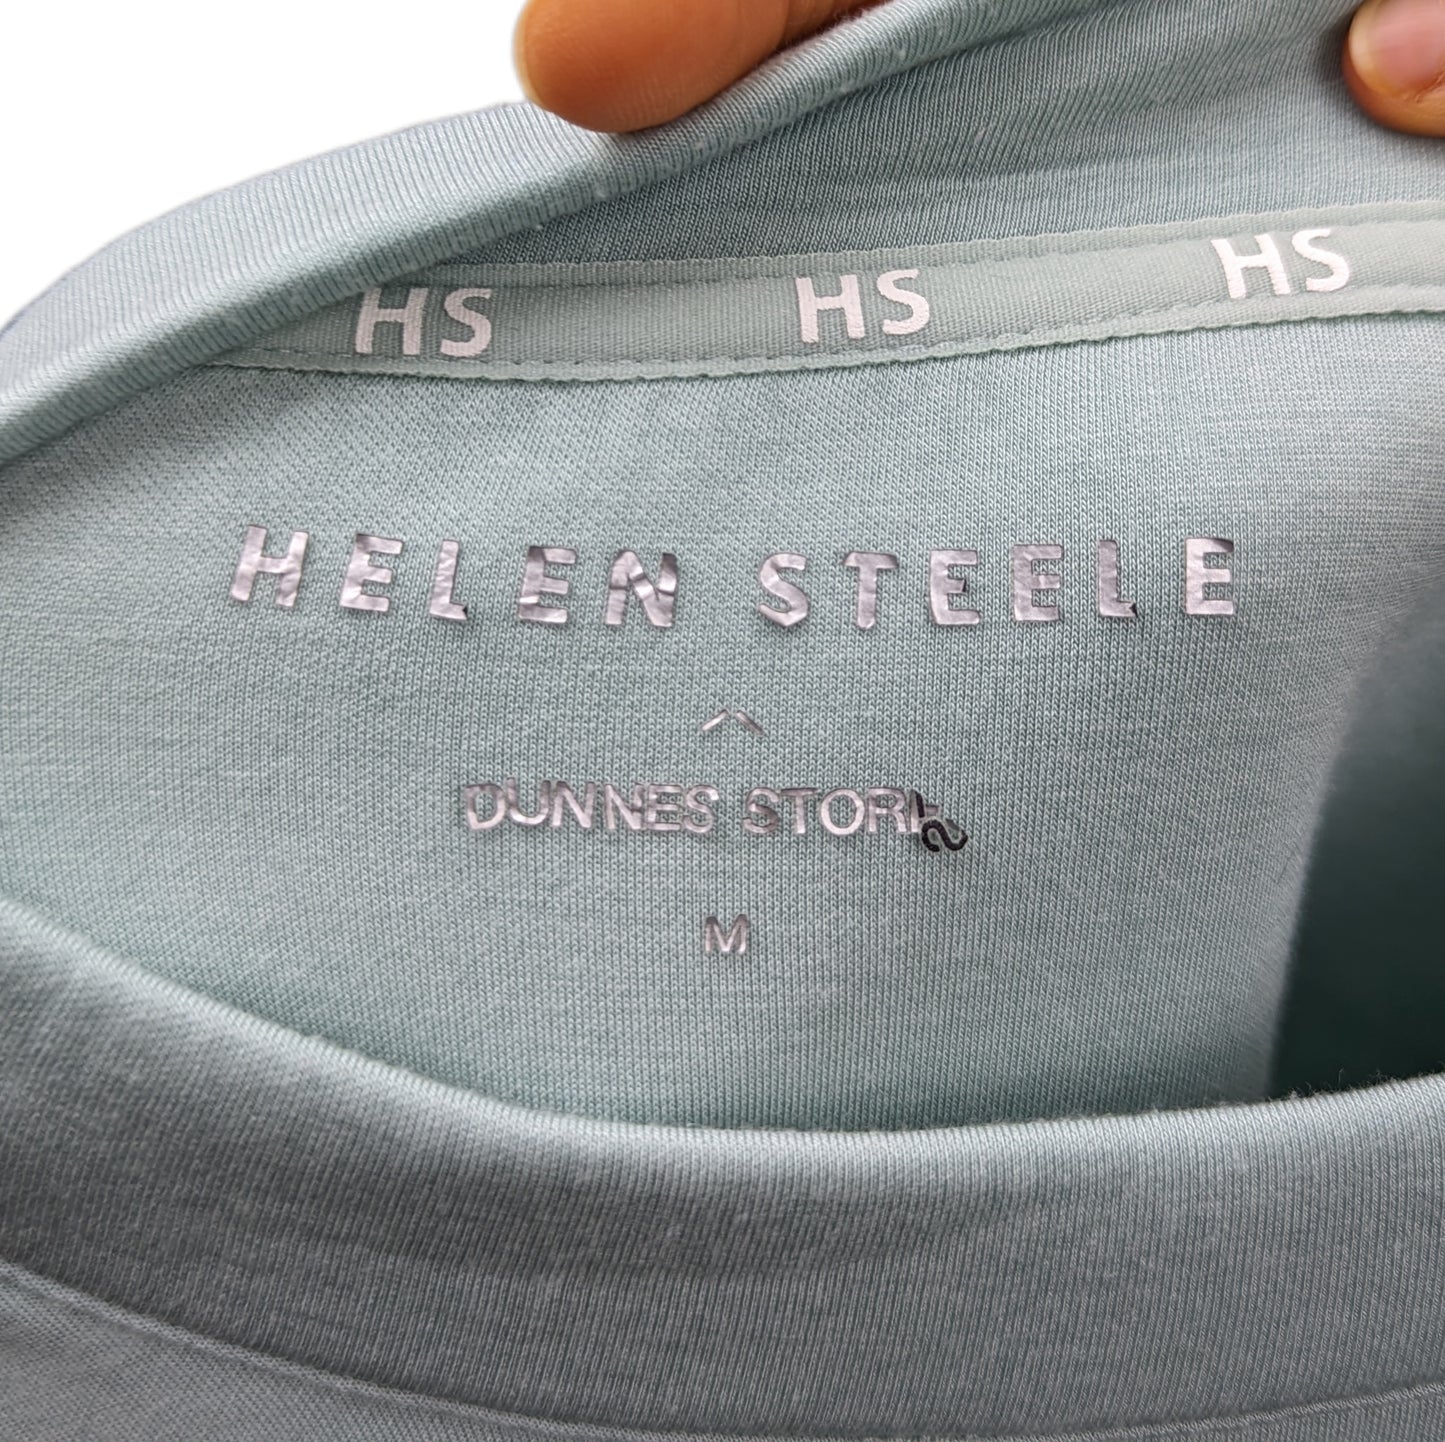 Helen Steele Blue Loose Fit Sweatshirt Women Size Medium